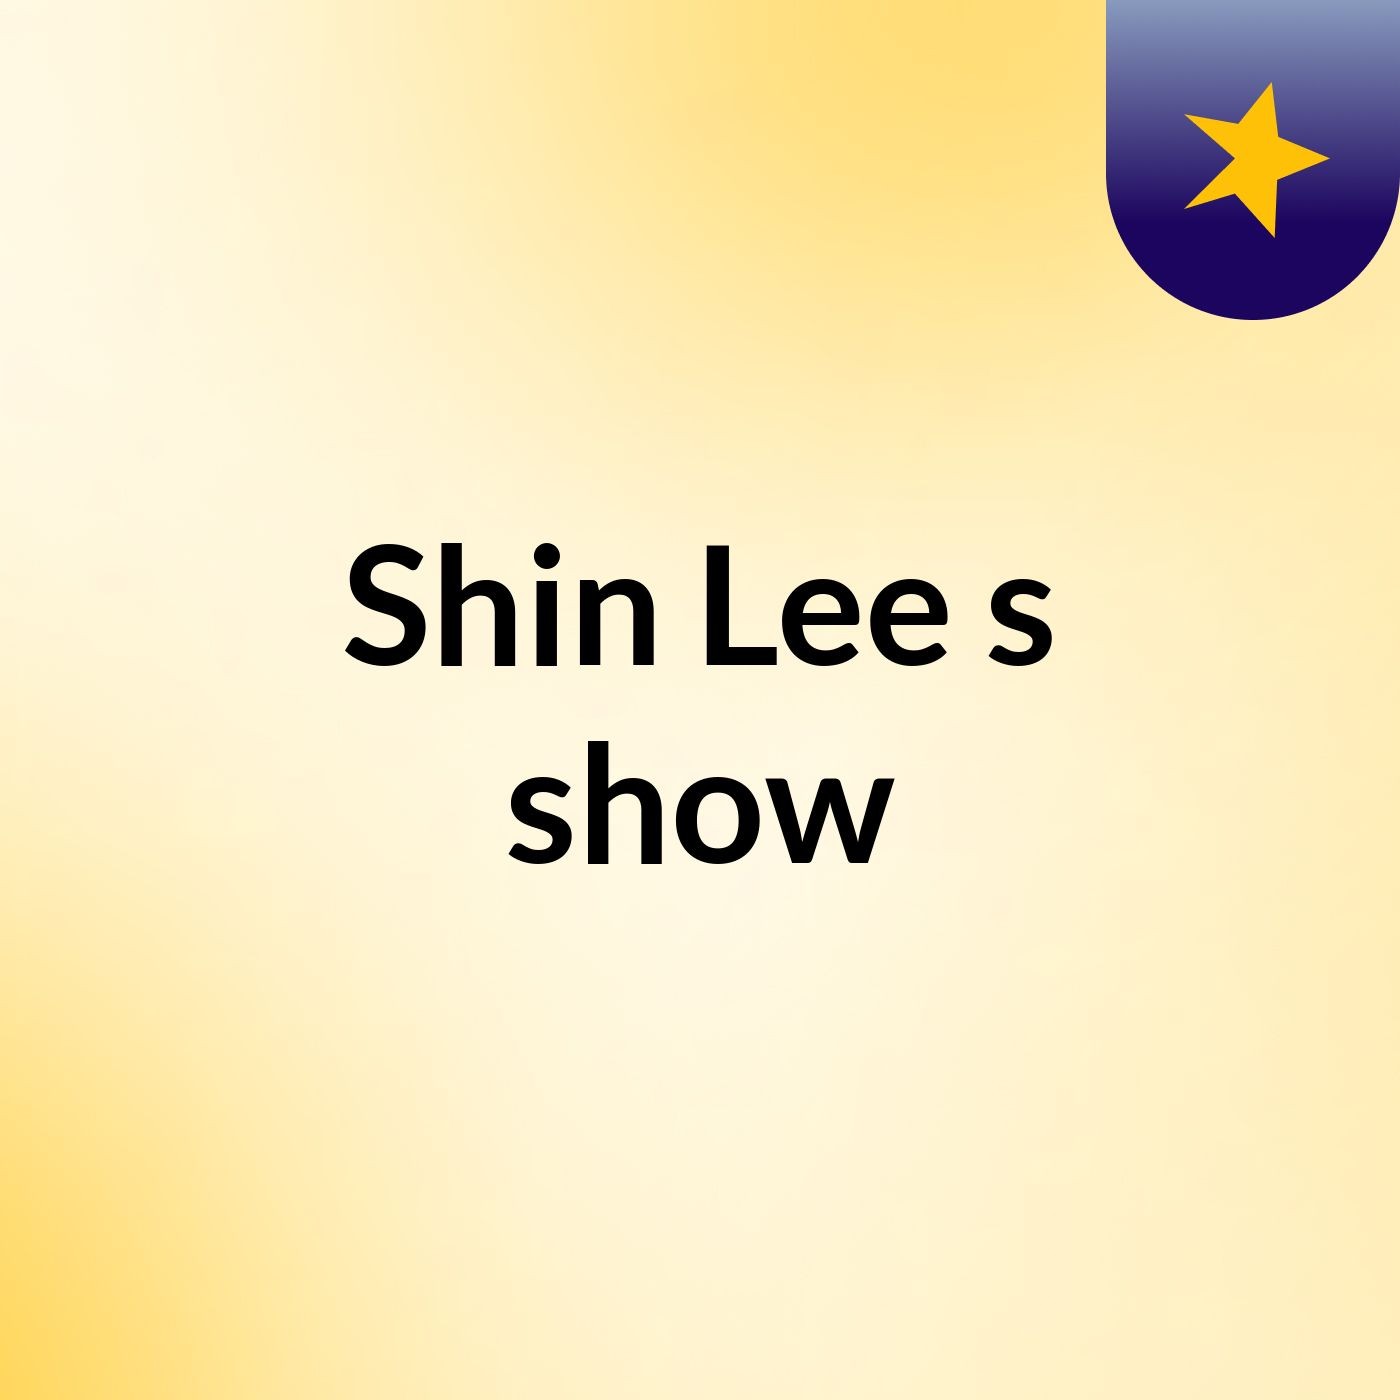 Shin Lee's show